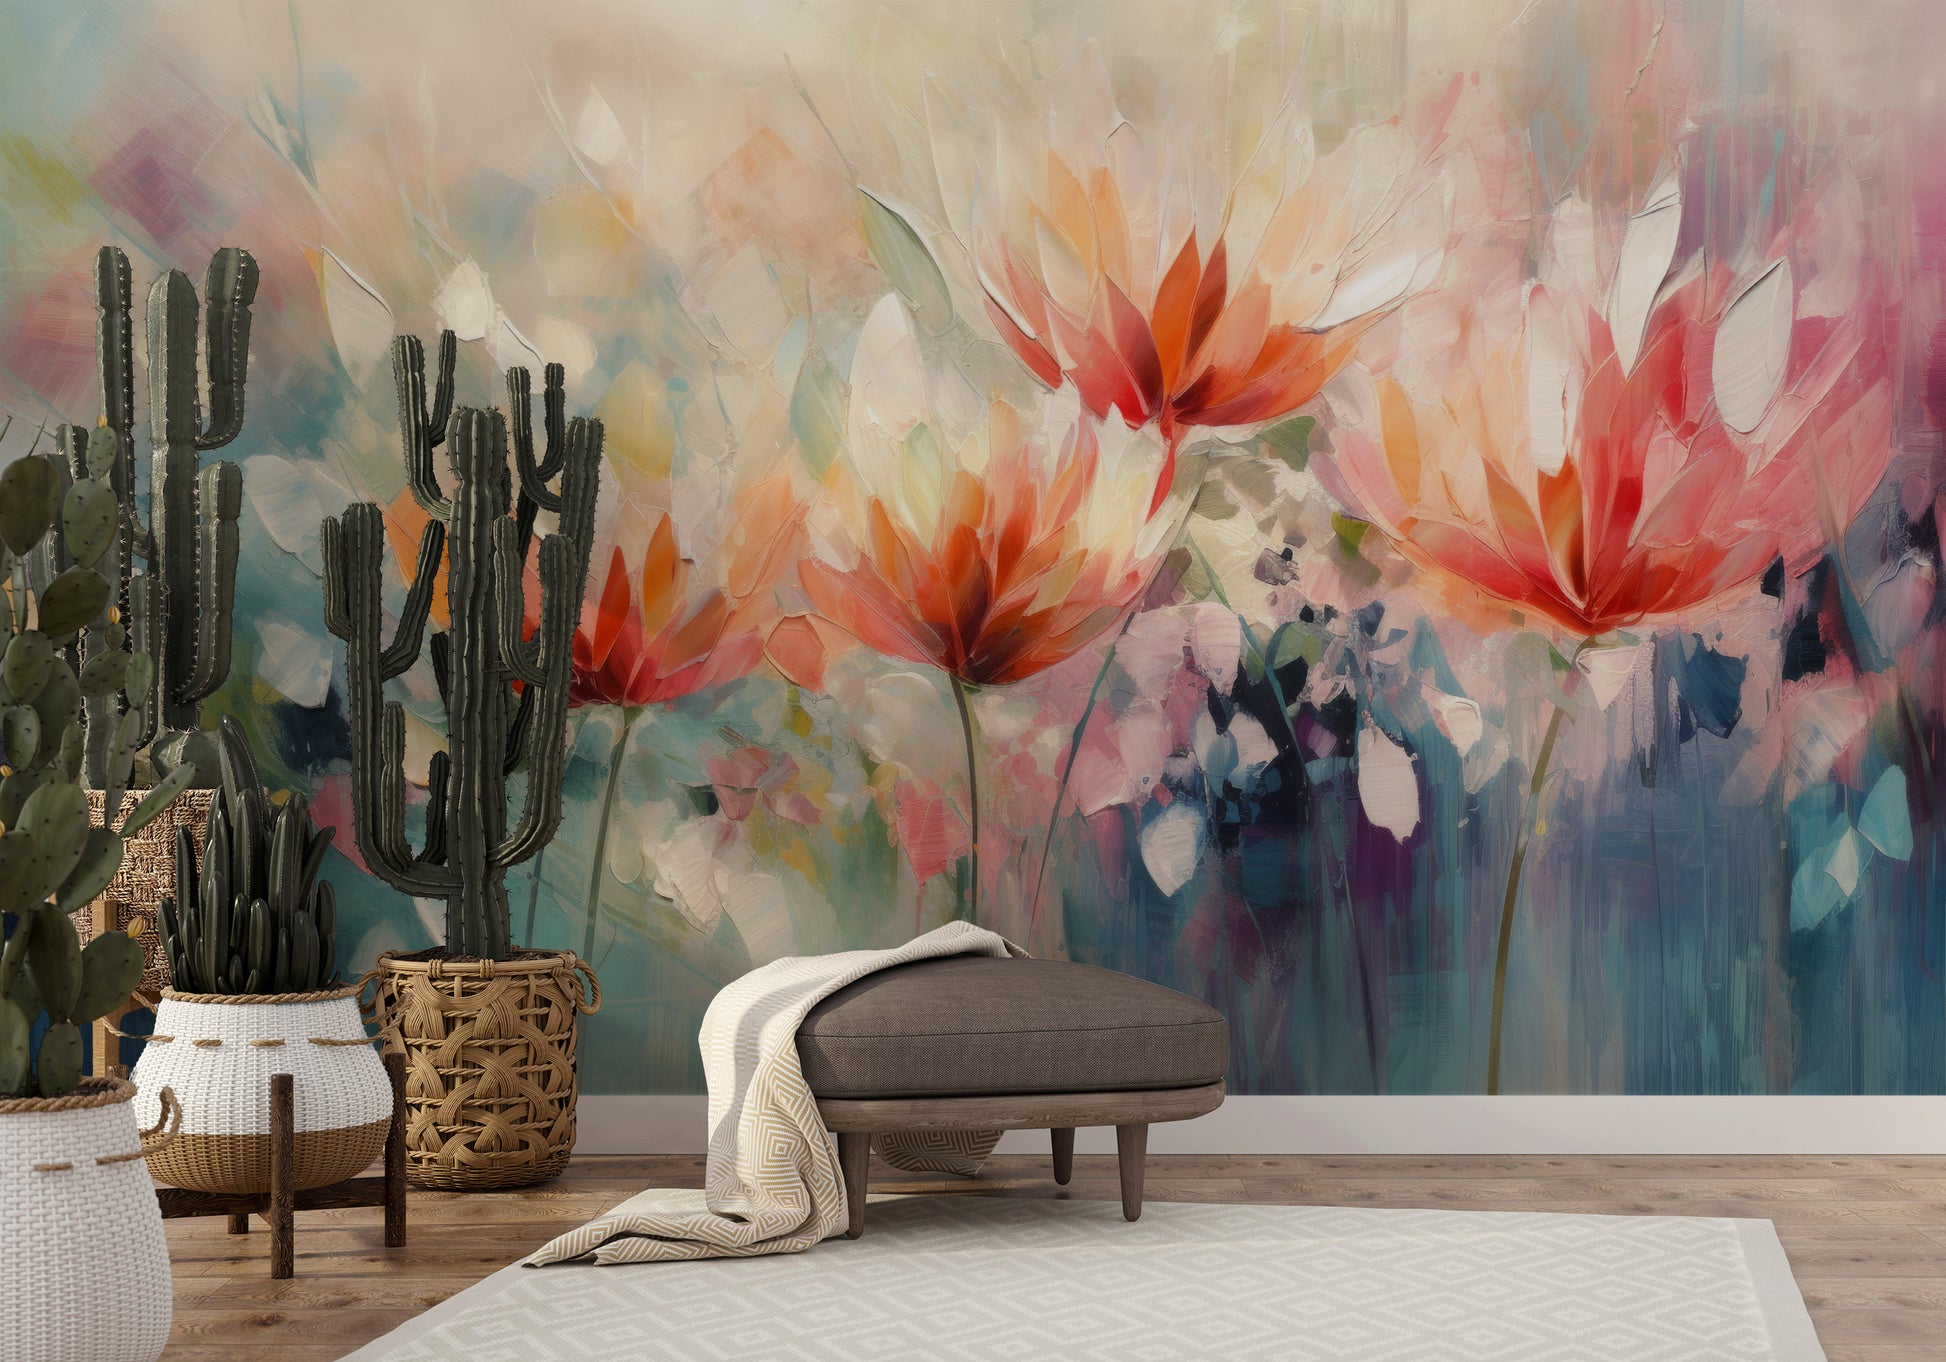 Zdjęcie prezentuje aranżację wnętrza z użyciem fototapety o nazwie Vibrant Floral Symphony pokazanej w aranżacji wnętrza.